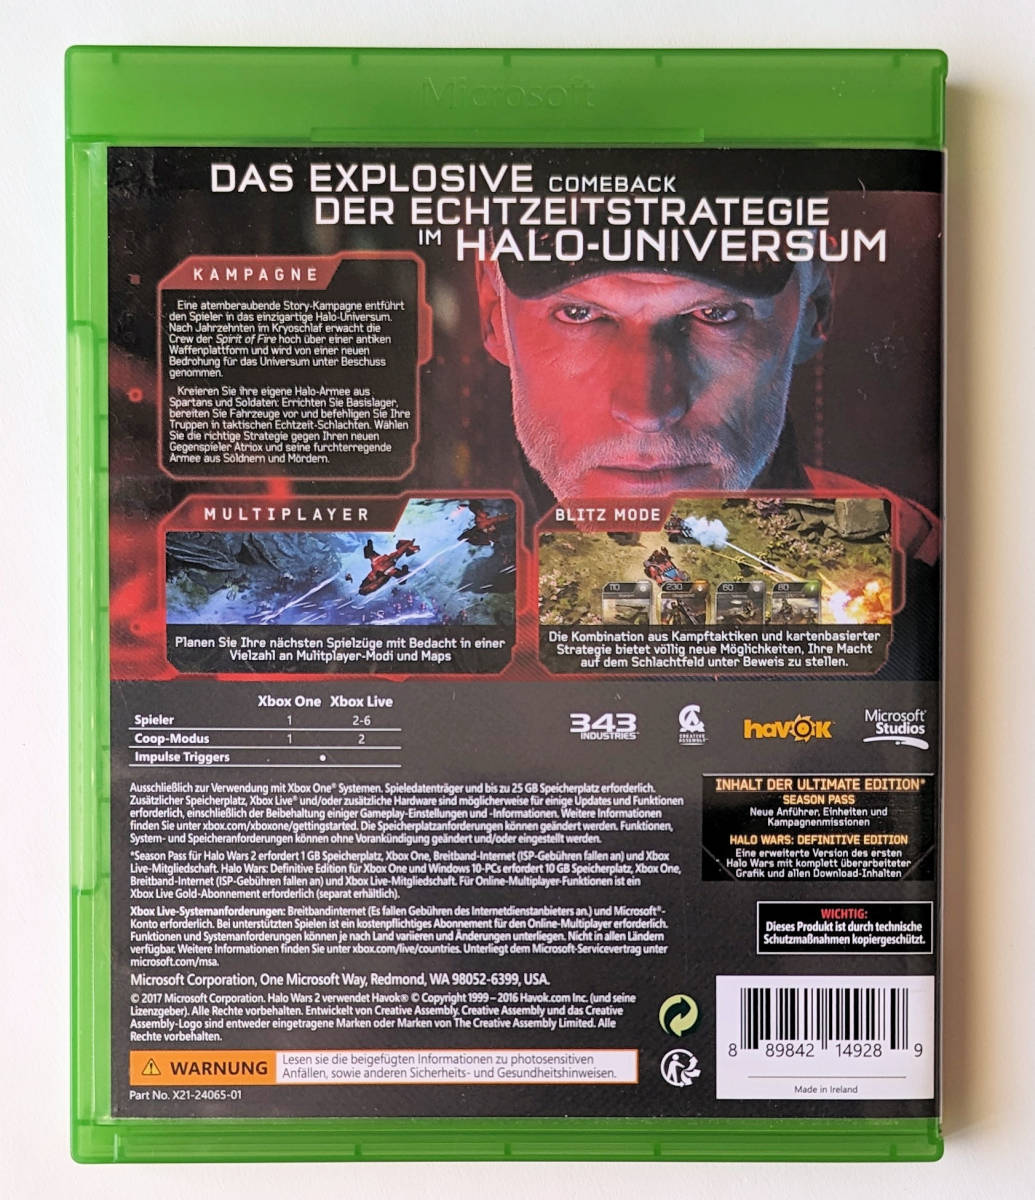  Halo War z2 HALO WARS 2 EU версия * XBOX ONE / XBOX SERIES X